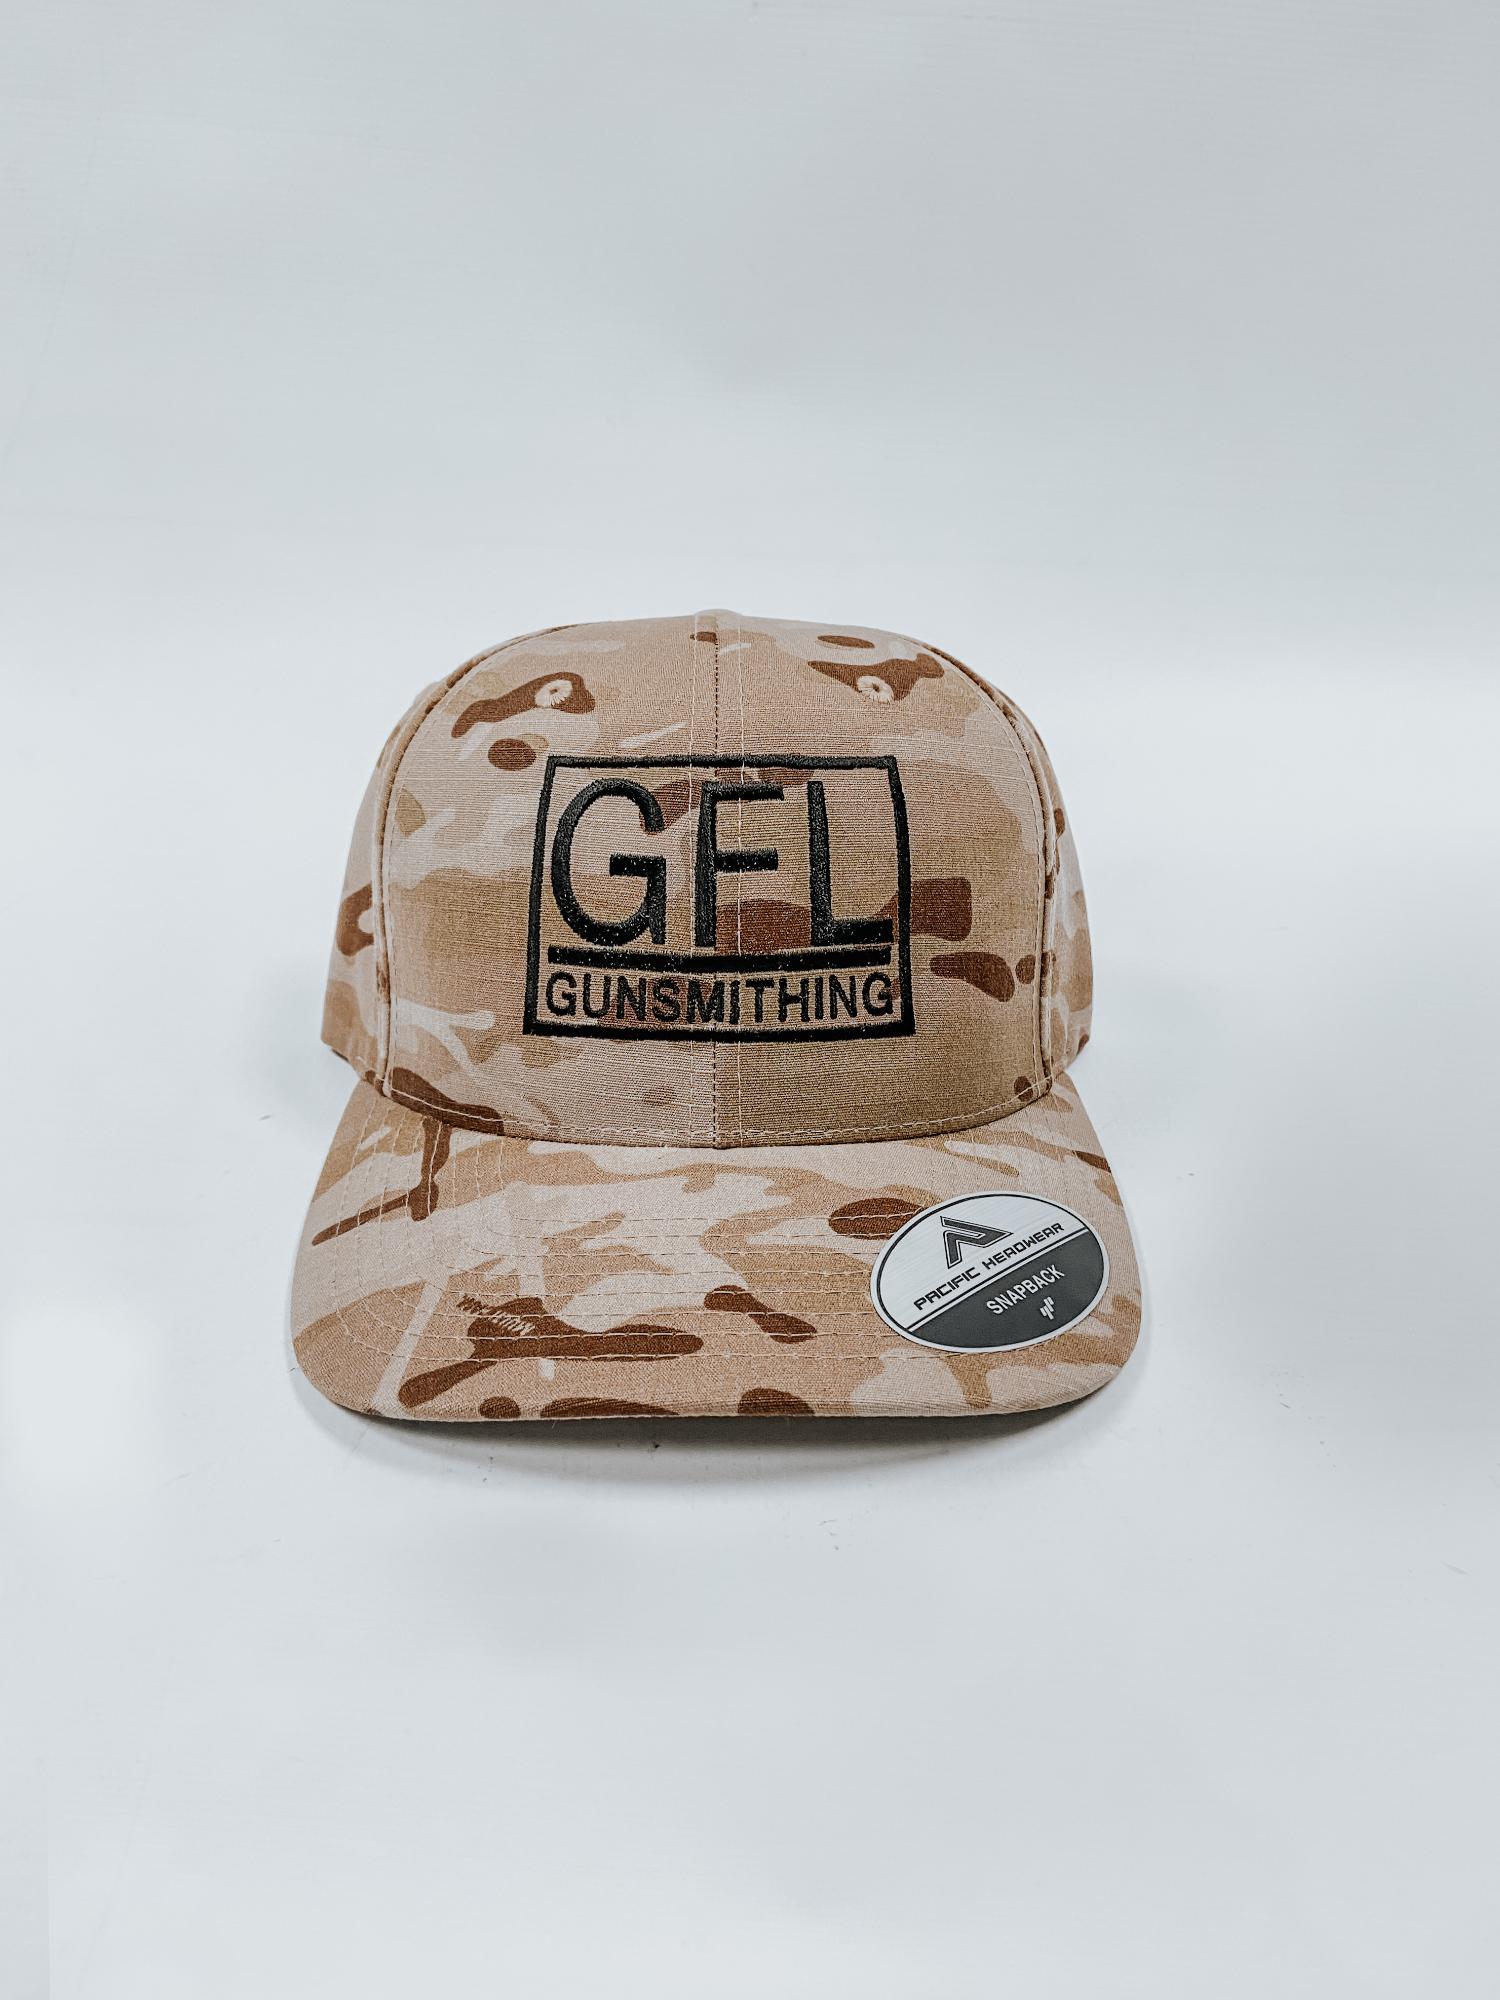  Gfl Gunsmith Hat Camo